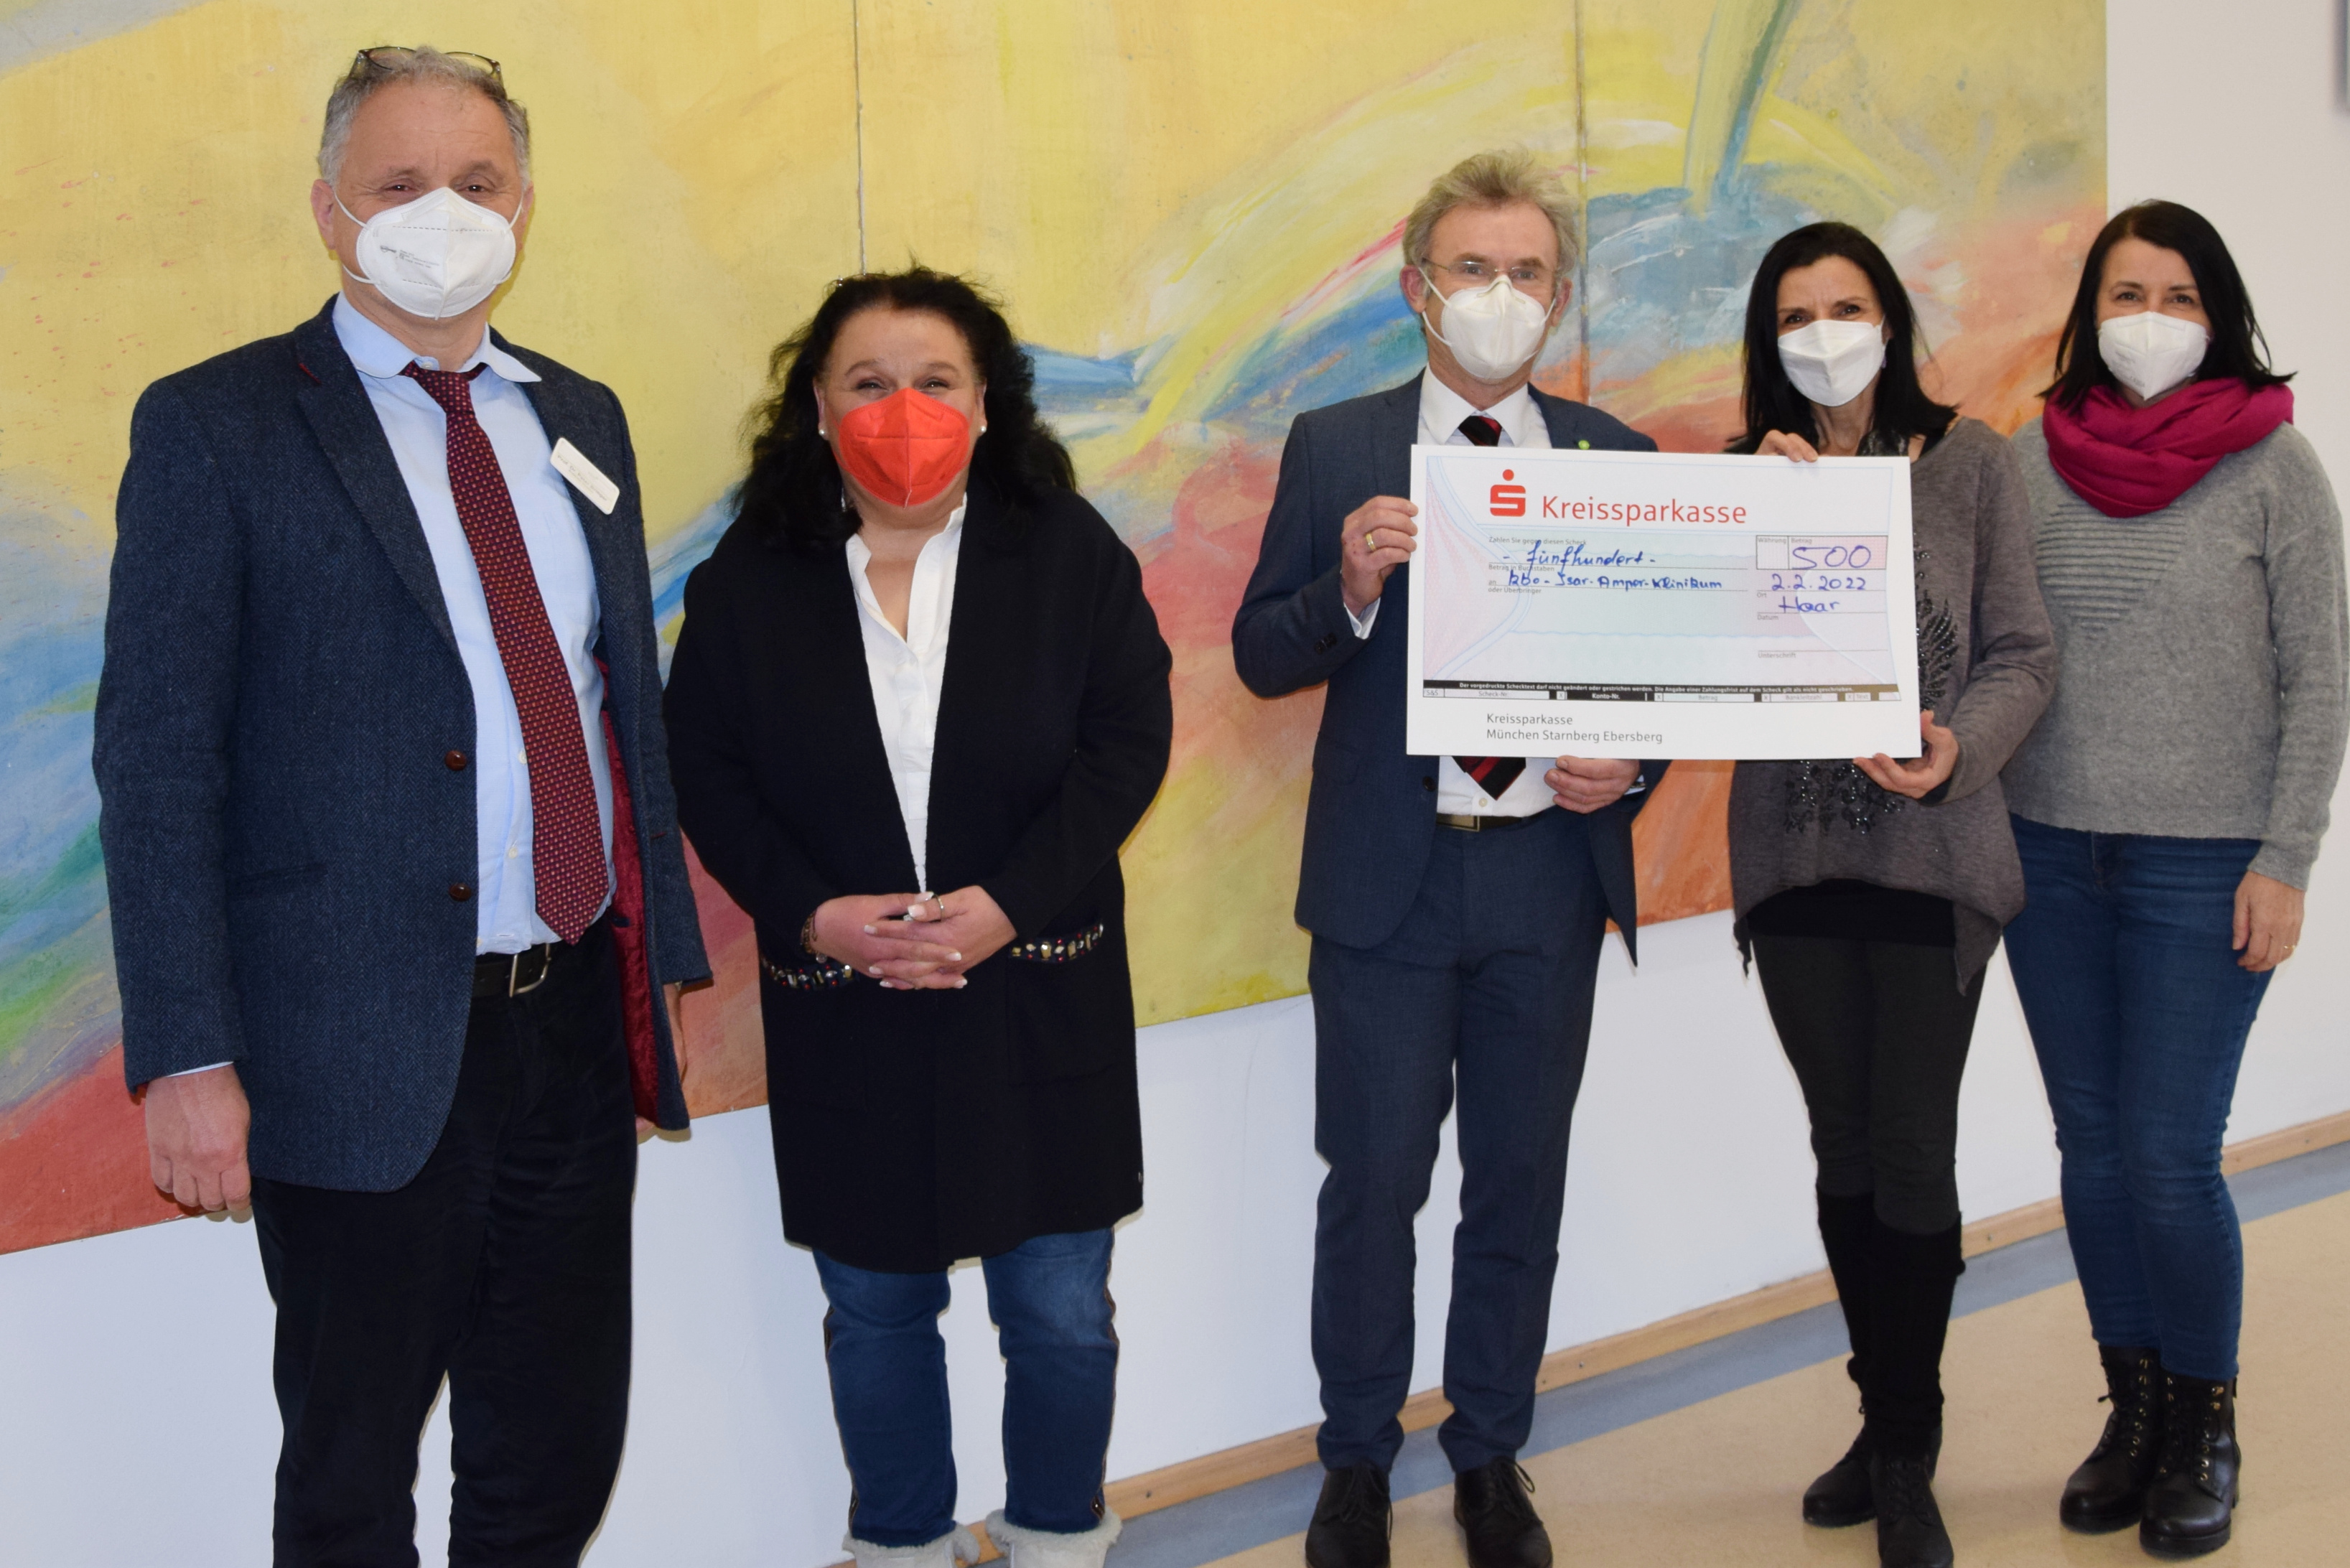 Großzügige Spende für die Patienten des kbo-Isar-Amper-Klinikum – da Chor D’aChor aus Haar überreicht Scheck über 500 Euro